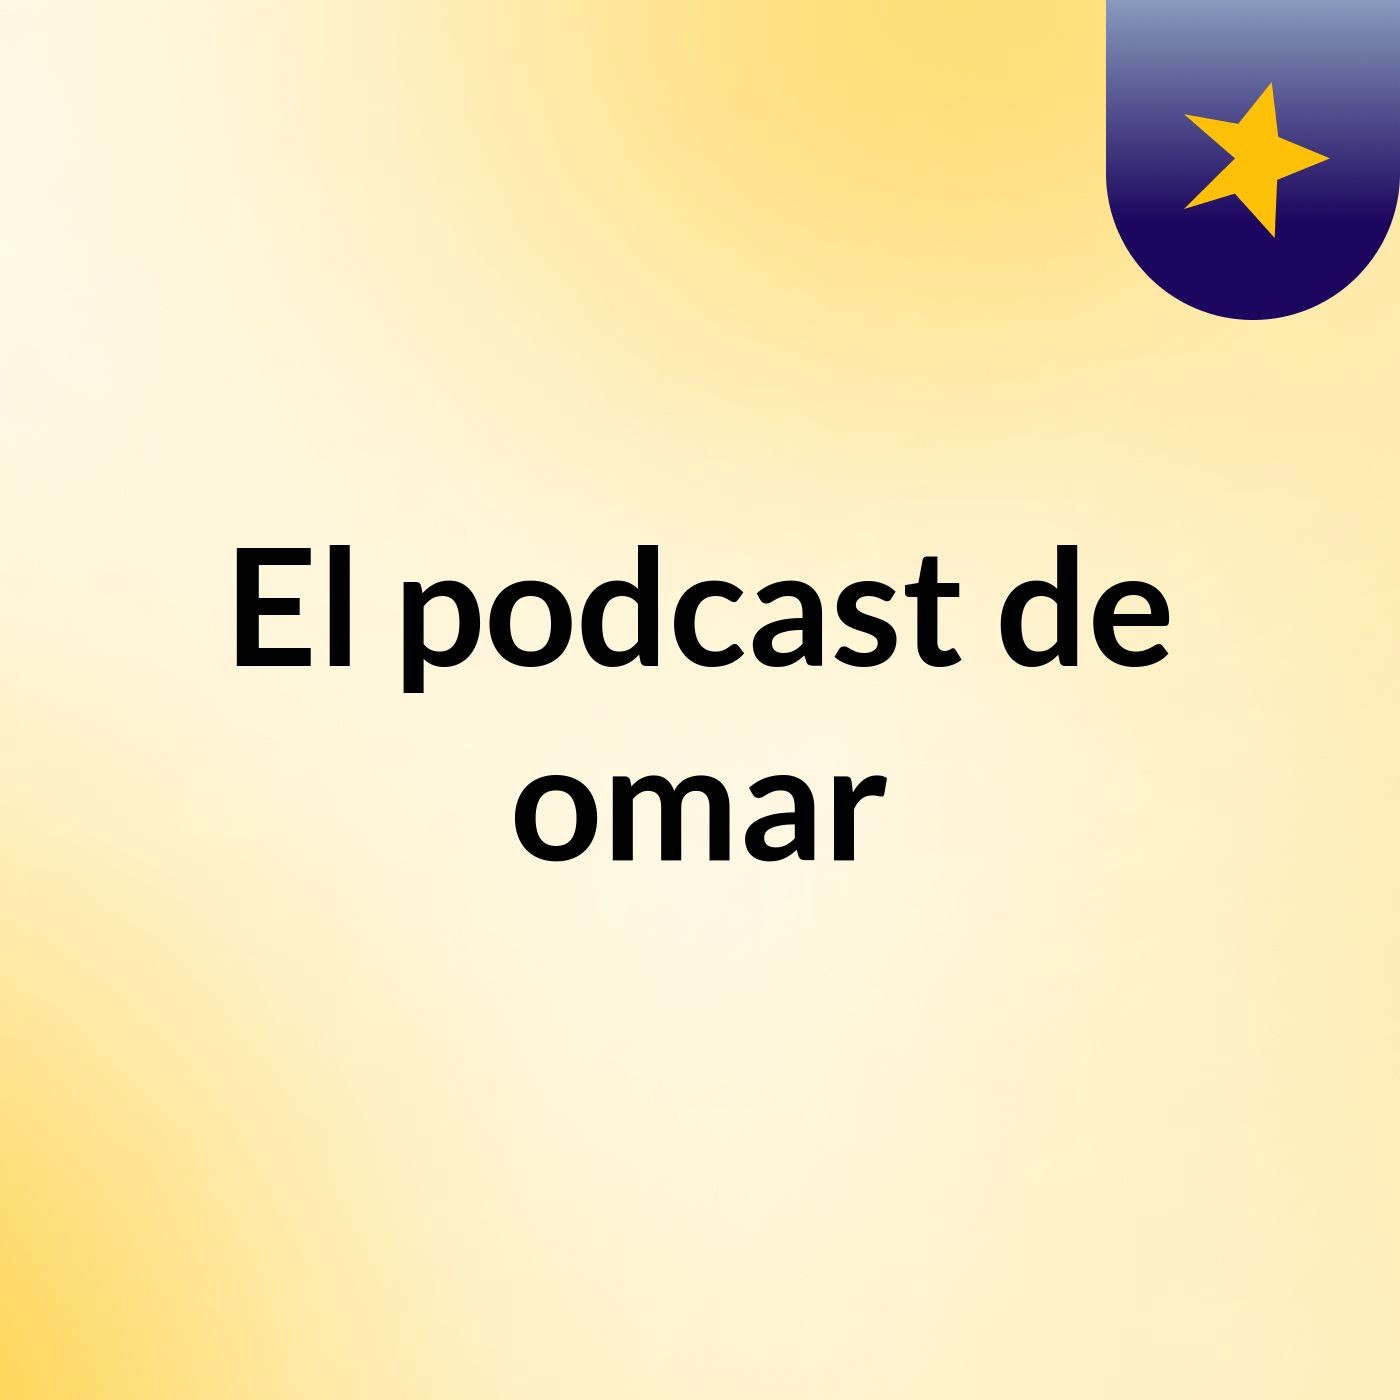 El podcast de omar